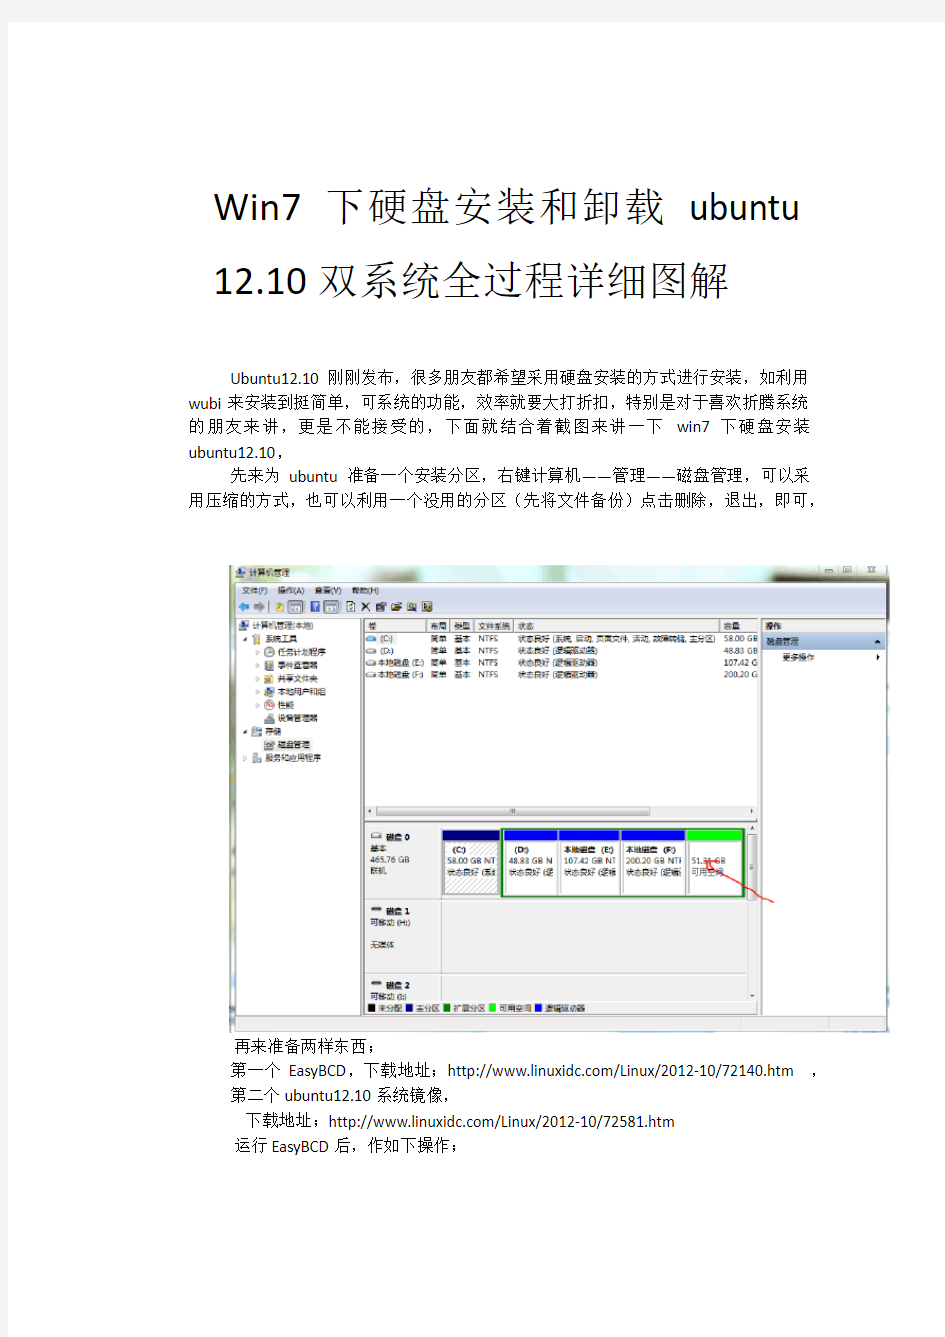 Win7下硬盘安装ubuntu12.10双系统全过程详细图解